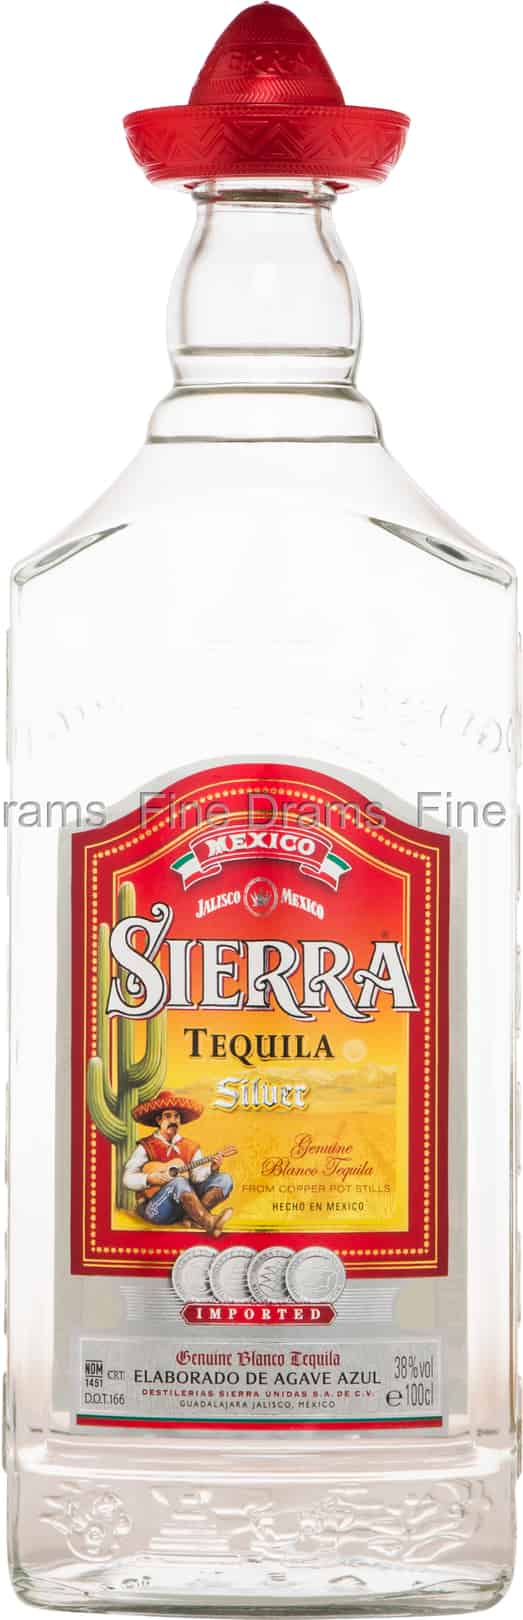 Sierra Silver LT